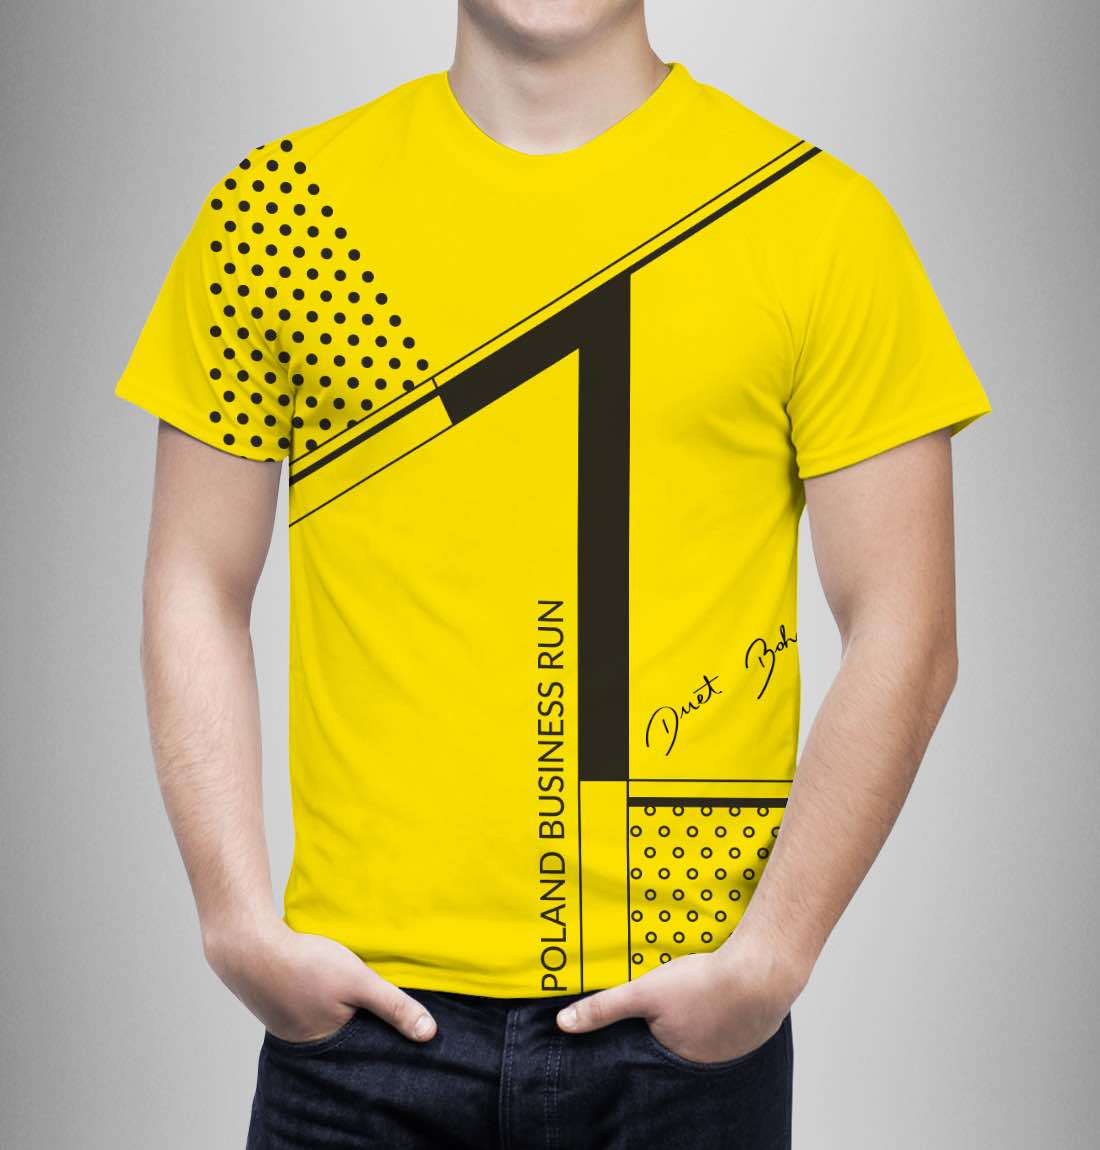 Duet BOHOBOCO zaprojektował Żółtą Koszulkę Lidera dla największego charytatywnego biegu biznesowego.